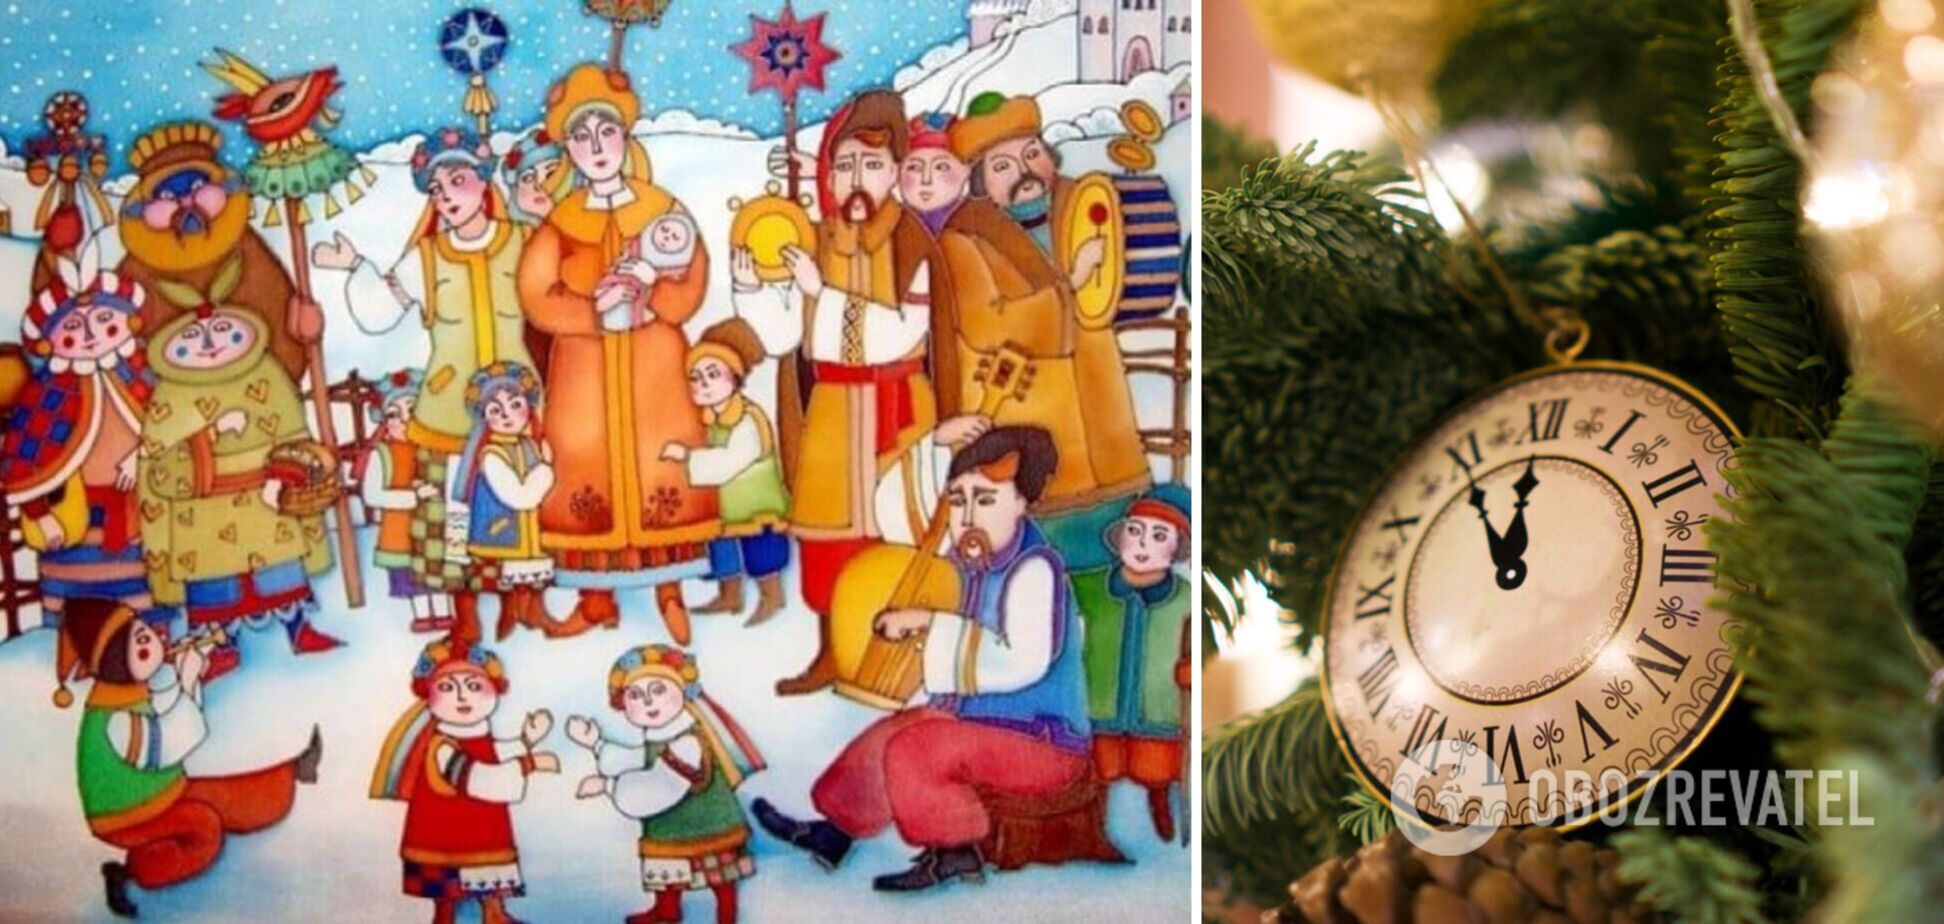 Віншування на Старий Новий рік: гарні українські привітання друзям і близьким